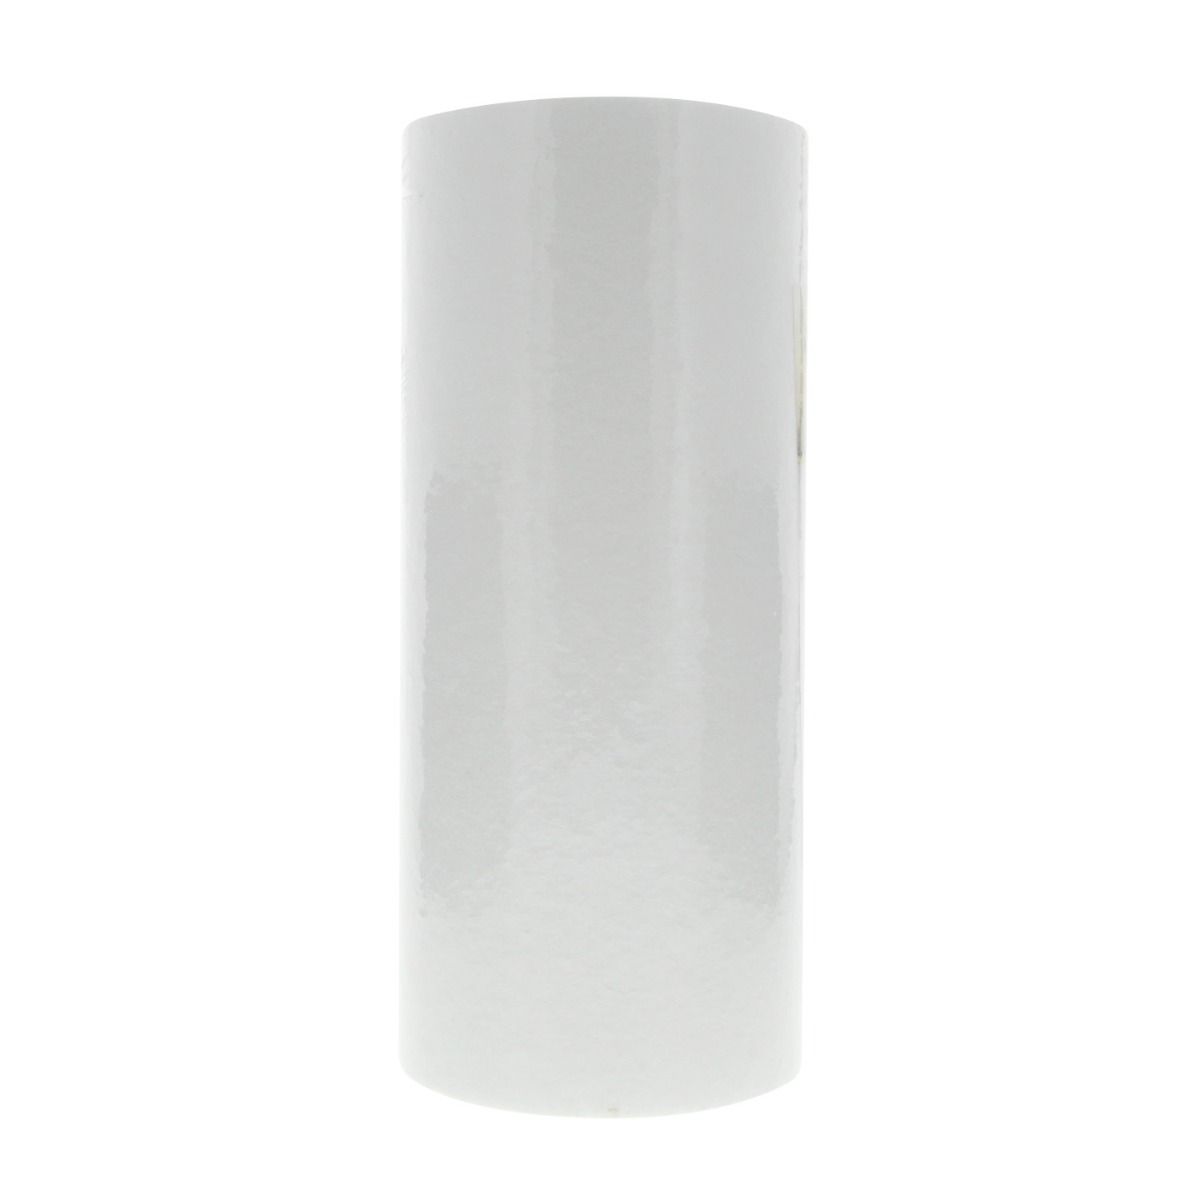 Pentek DGD-2501 Sediment Water Filter (10-inch x 4.5-inch)